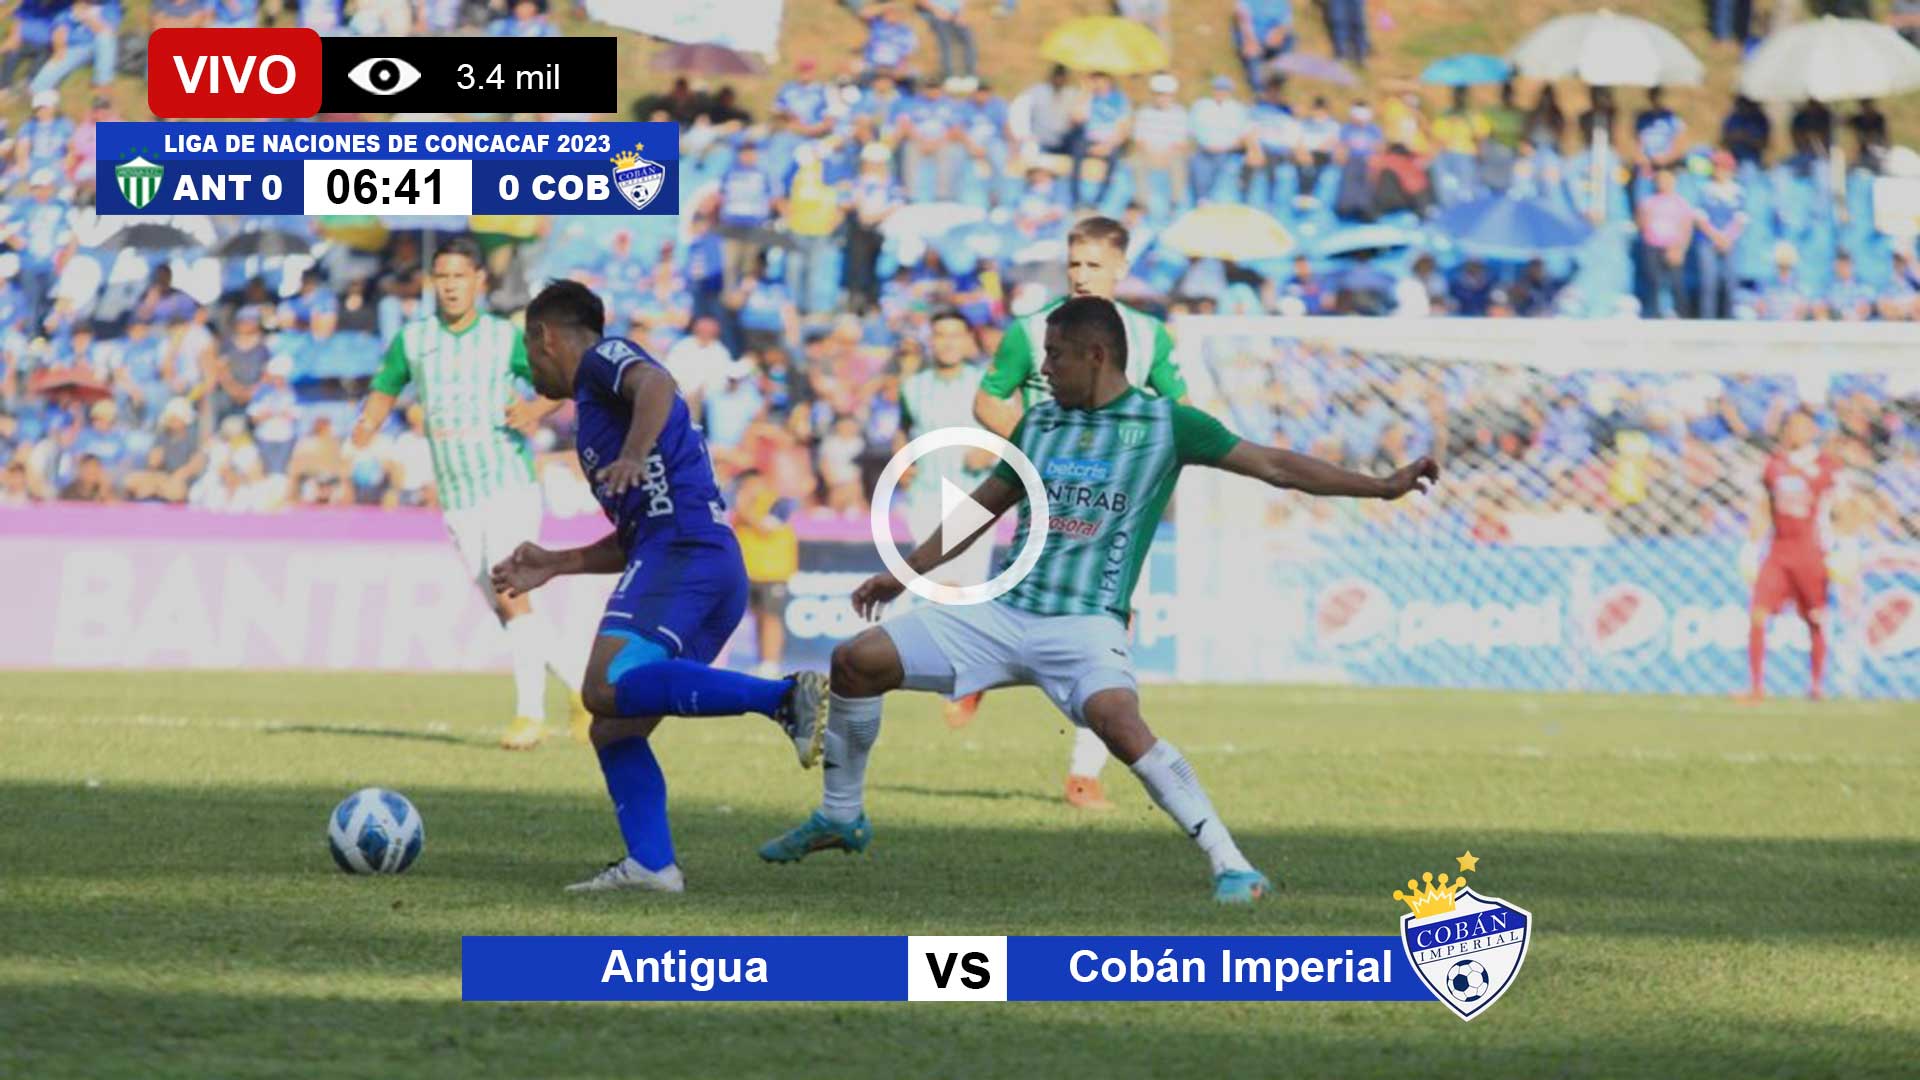 Antigua-vs-Cobán-Imperial-en-vivo-online-gratis-por-internet